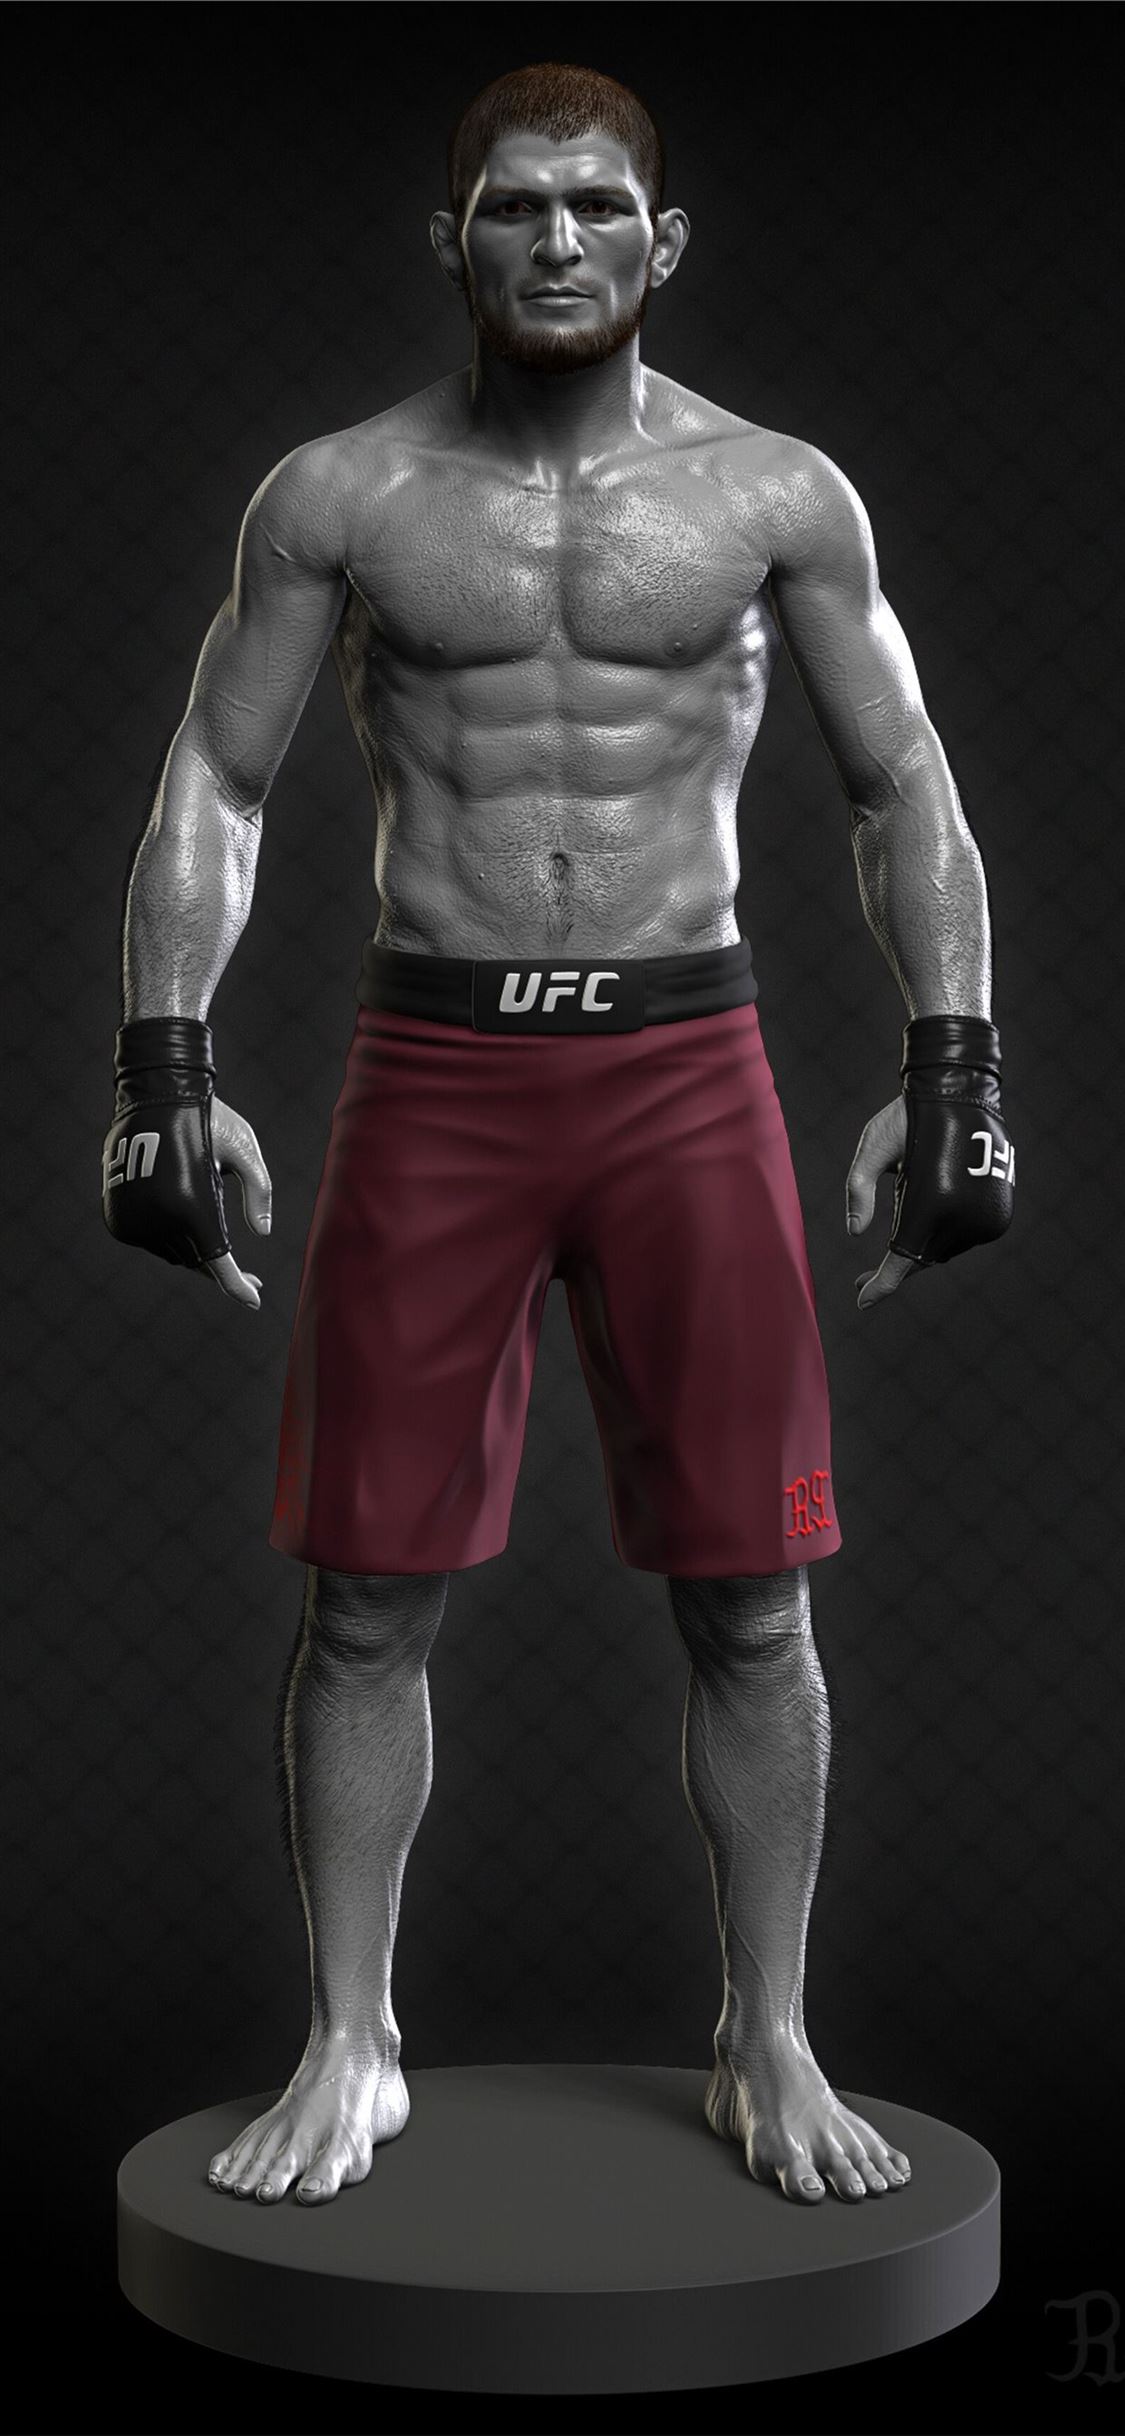 Wallpaper UFC Conor McGregor Khabib Nurmagomedov Khabib Nurmagomedov  Conor McGregor images for desktop section спорт  download